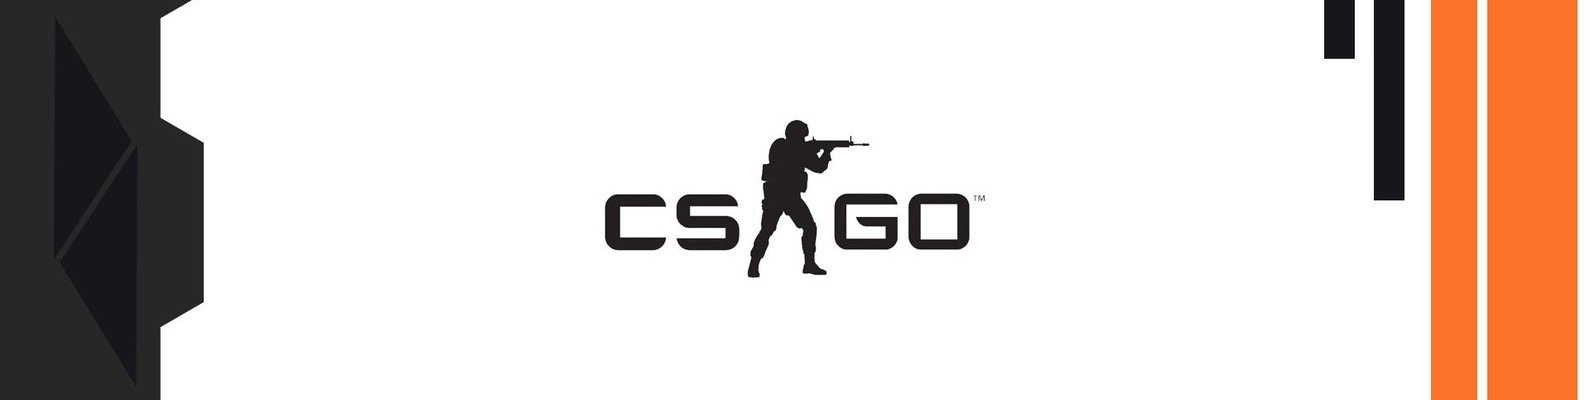 П а б го. КС надпись. CS go надпись. Логотип КС го. Counter-Strike: Global Offensive надпись.